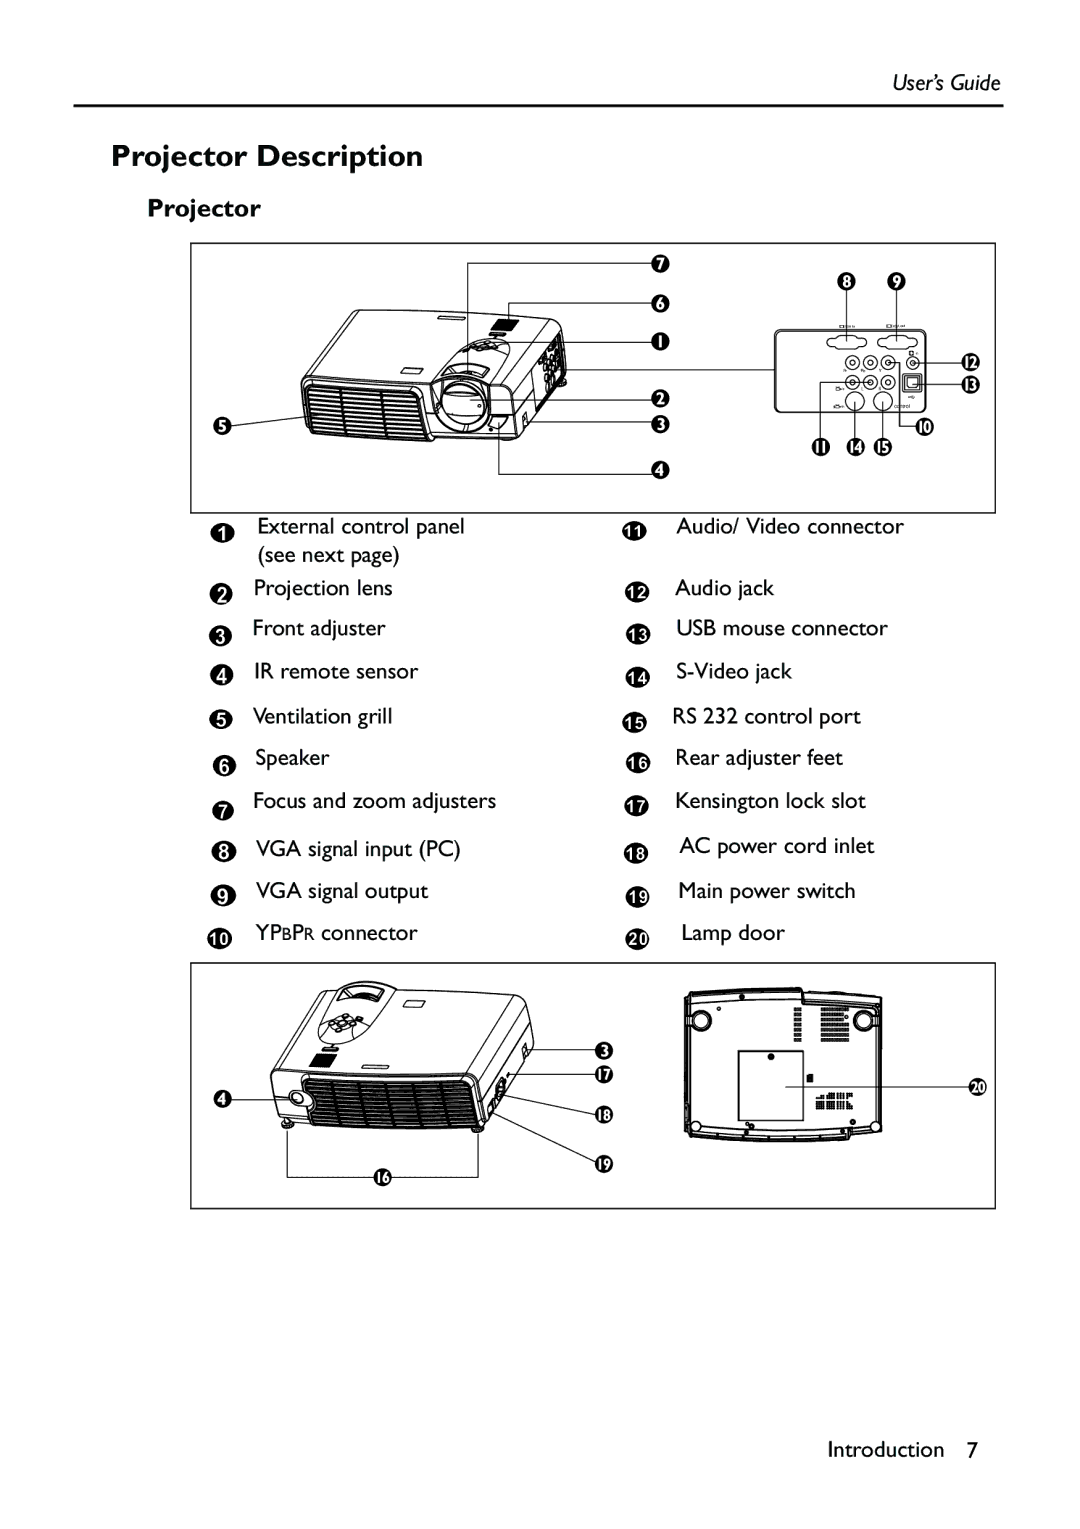 HP Vp6111 manual Projector Description 